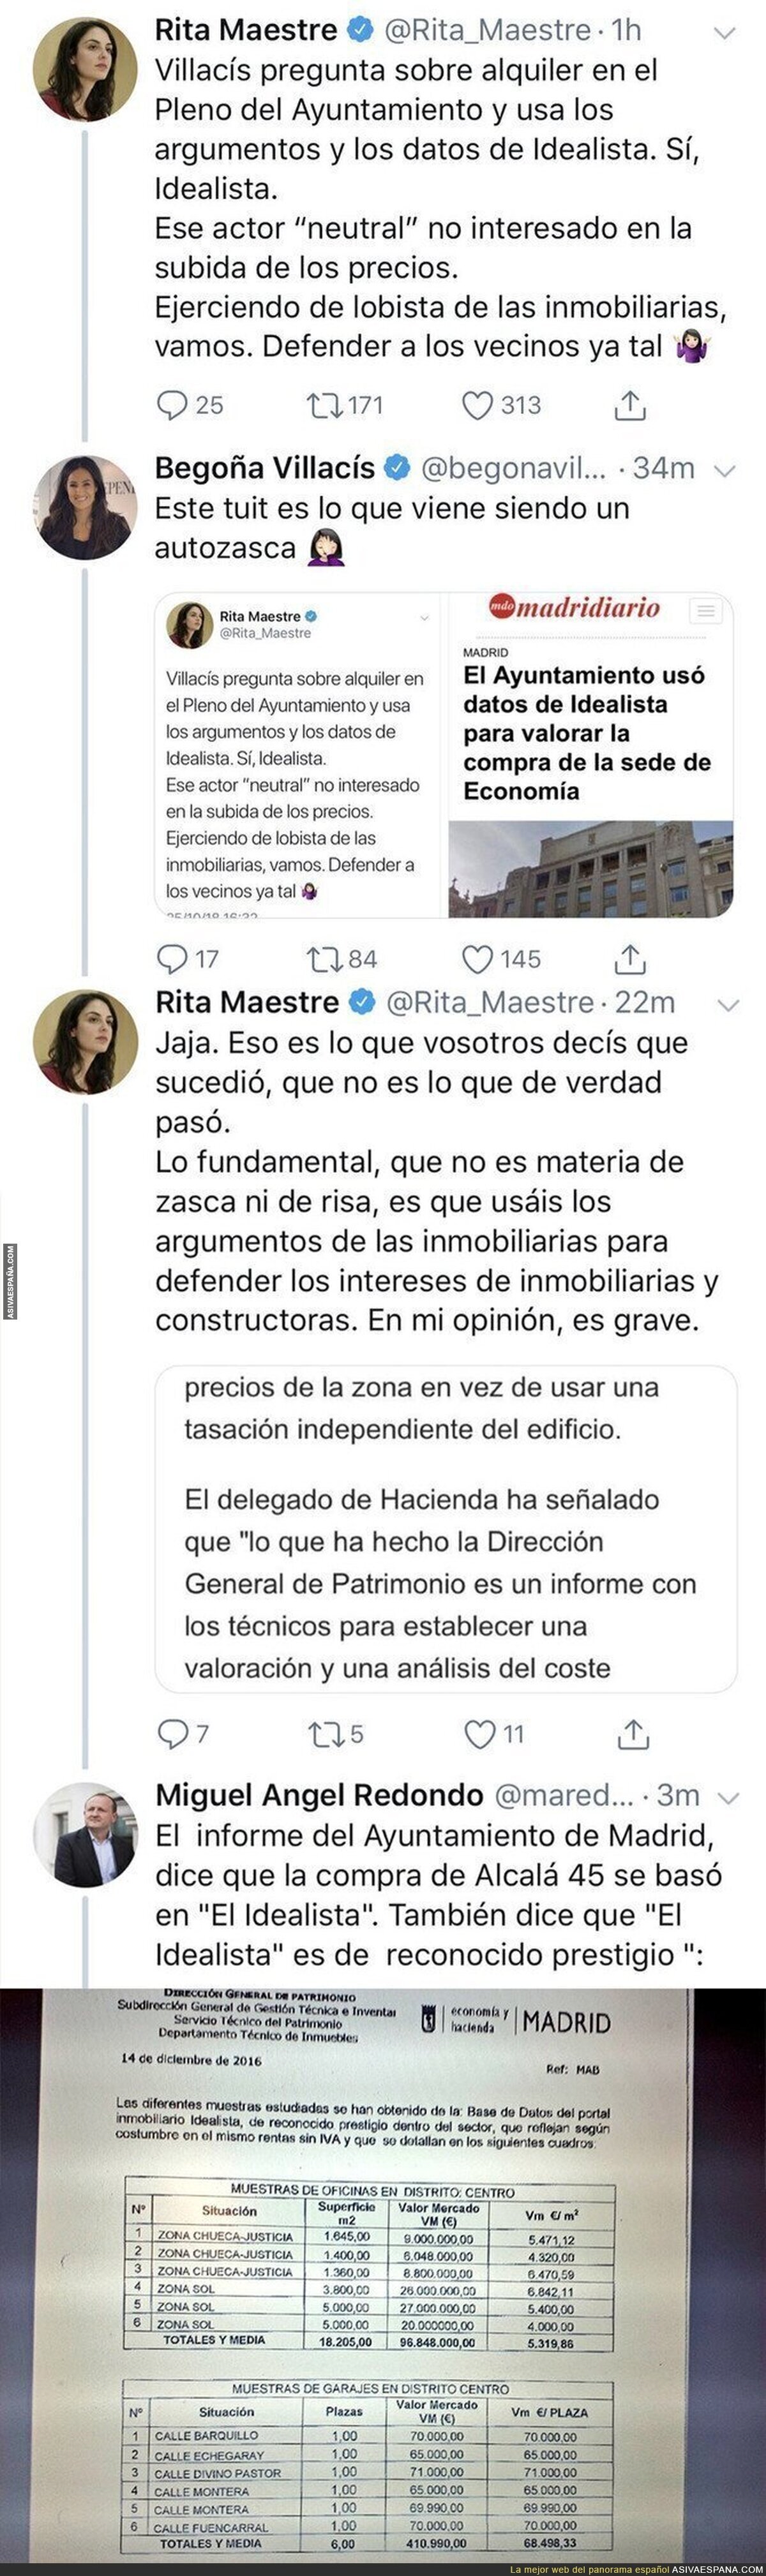 Begoña Villacís deja retratada por completo a Rita Maestre